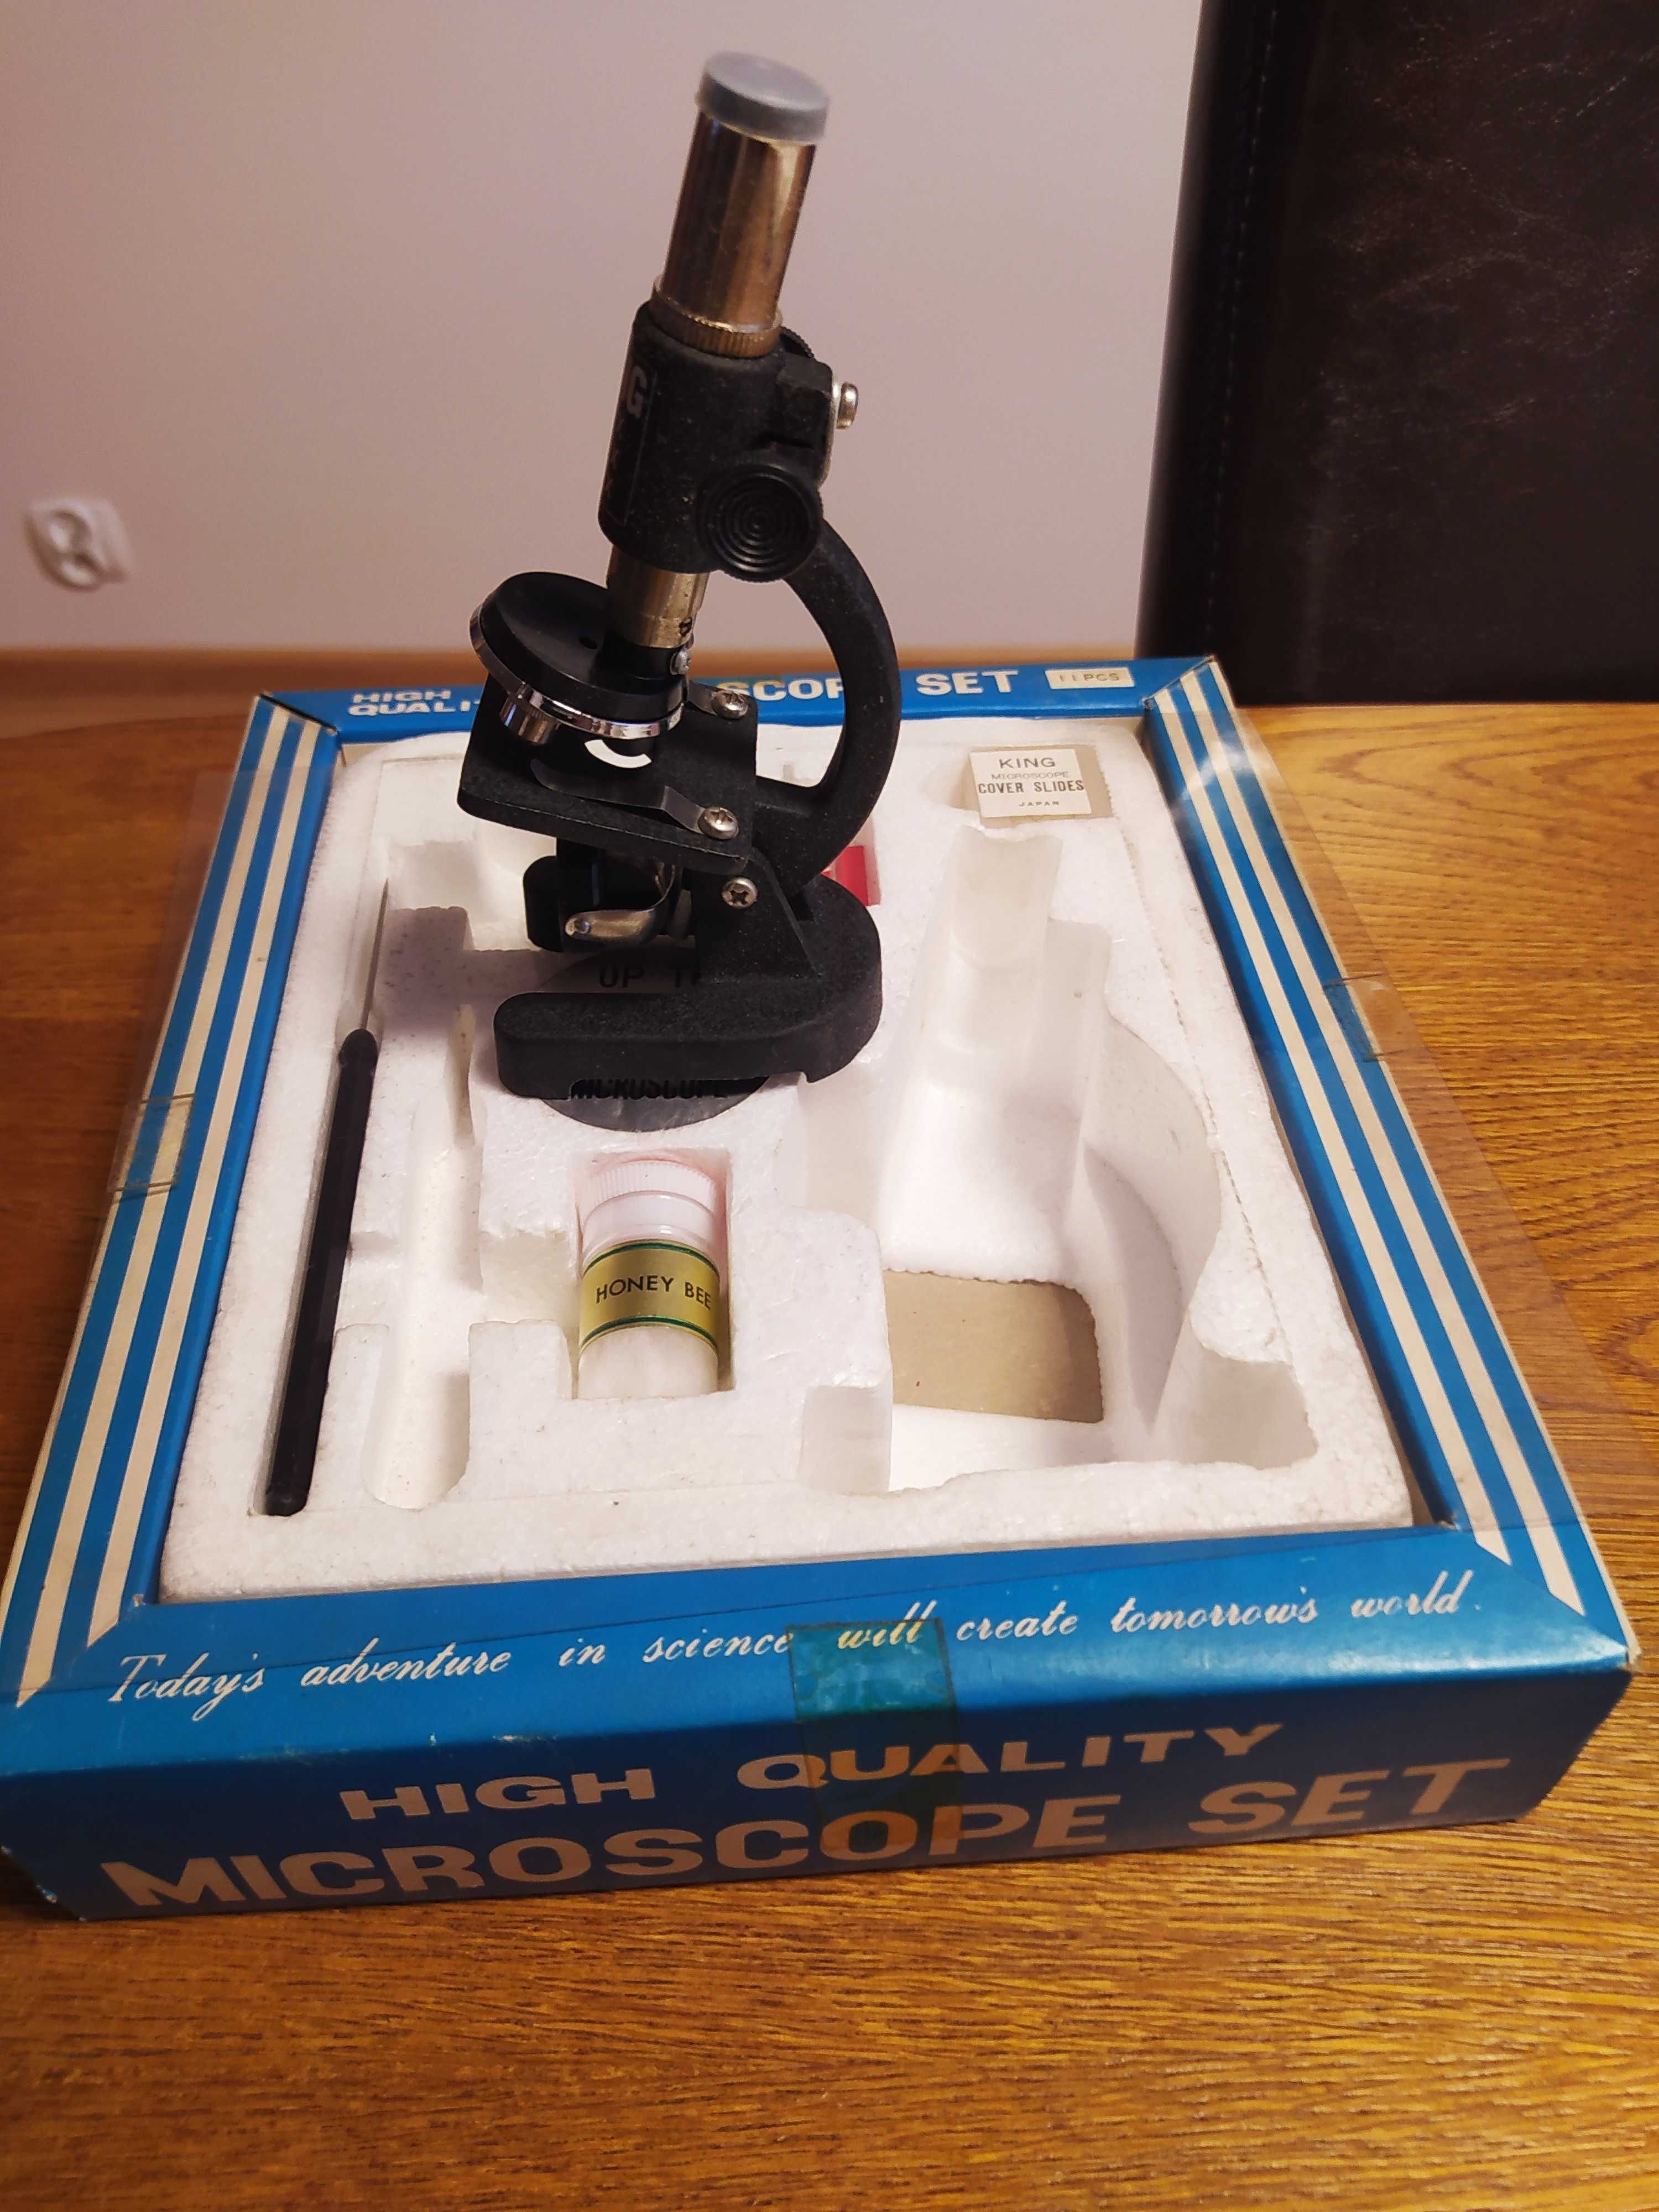 Mikroskop zabawka z lat 80 XX w. produkcji japońskiej